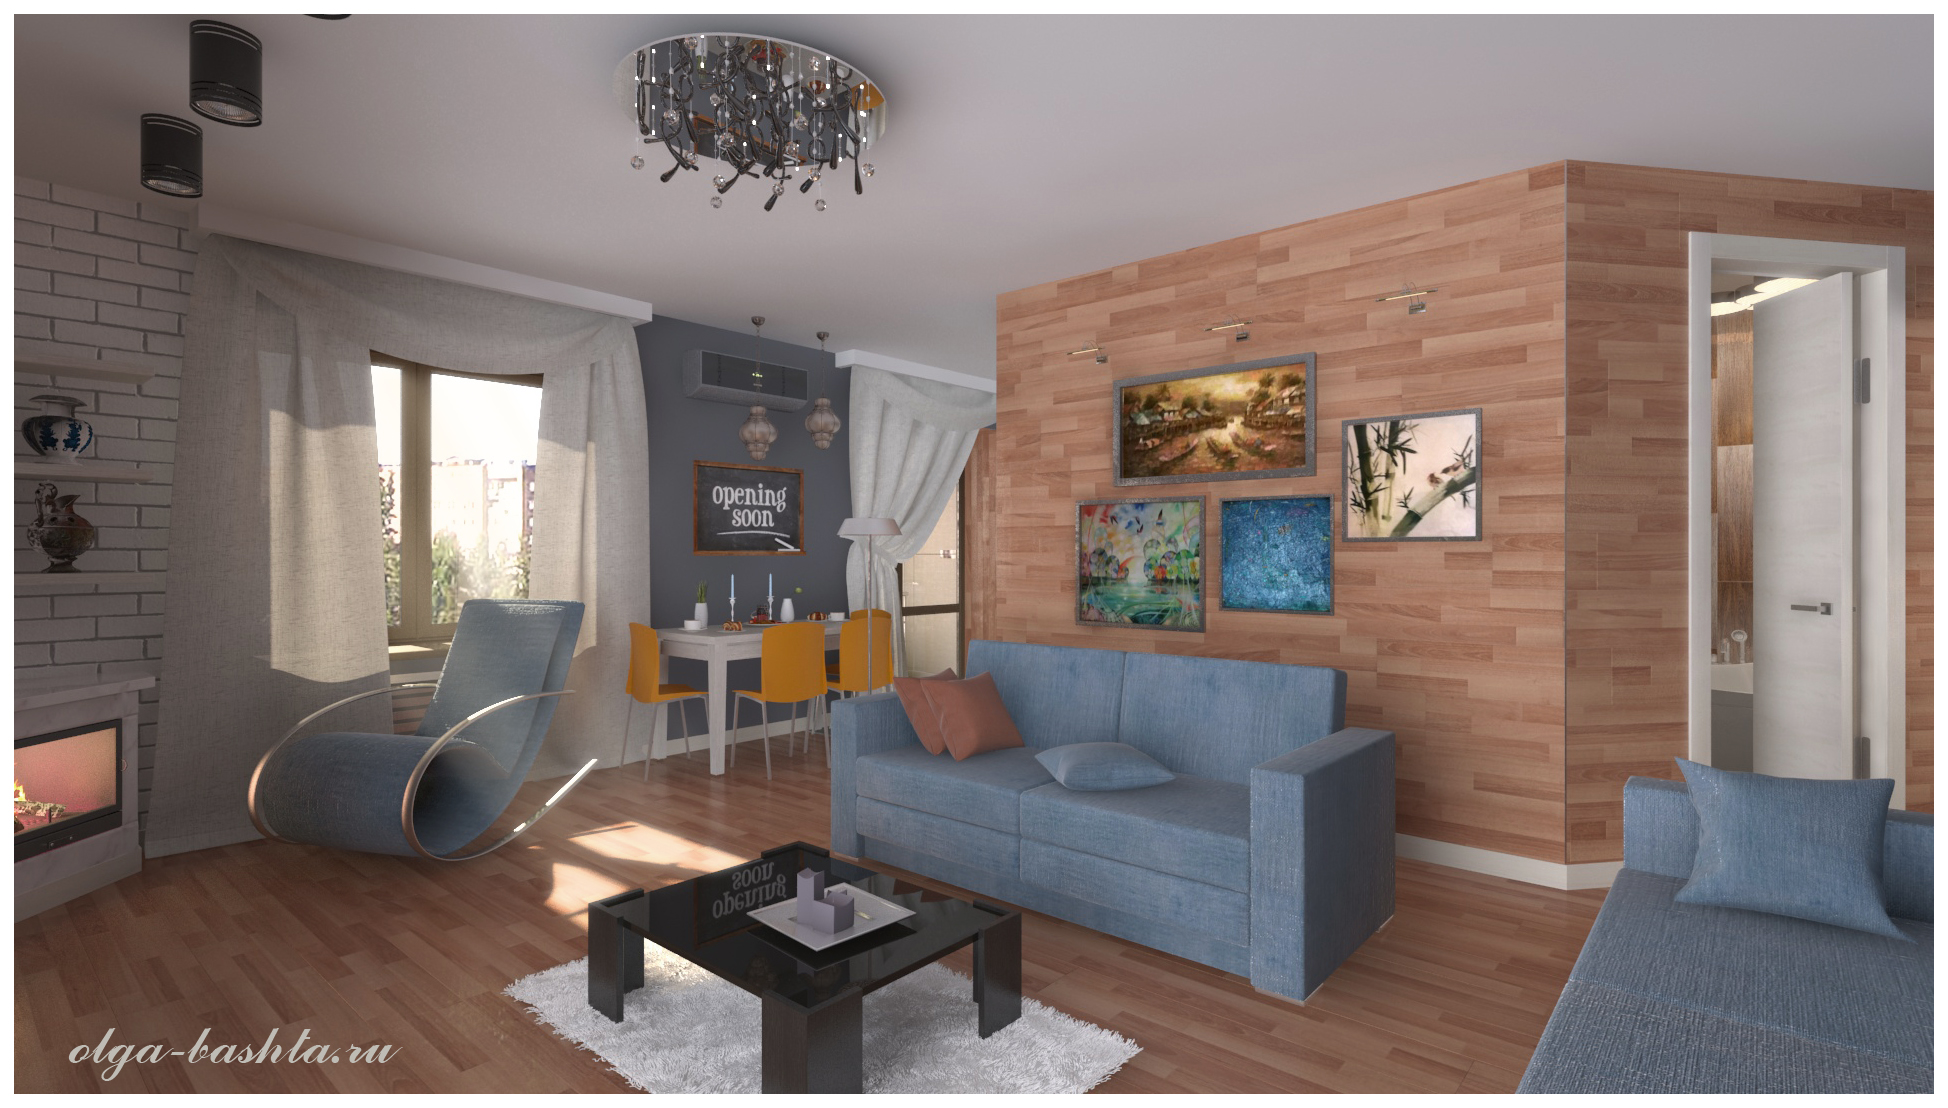 Salon avec cheminée dans 3d max vray 3.0 image